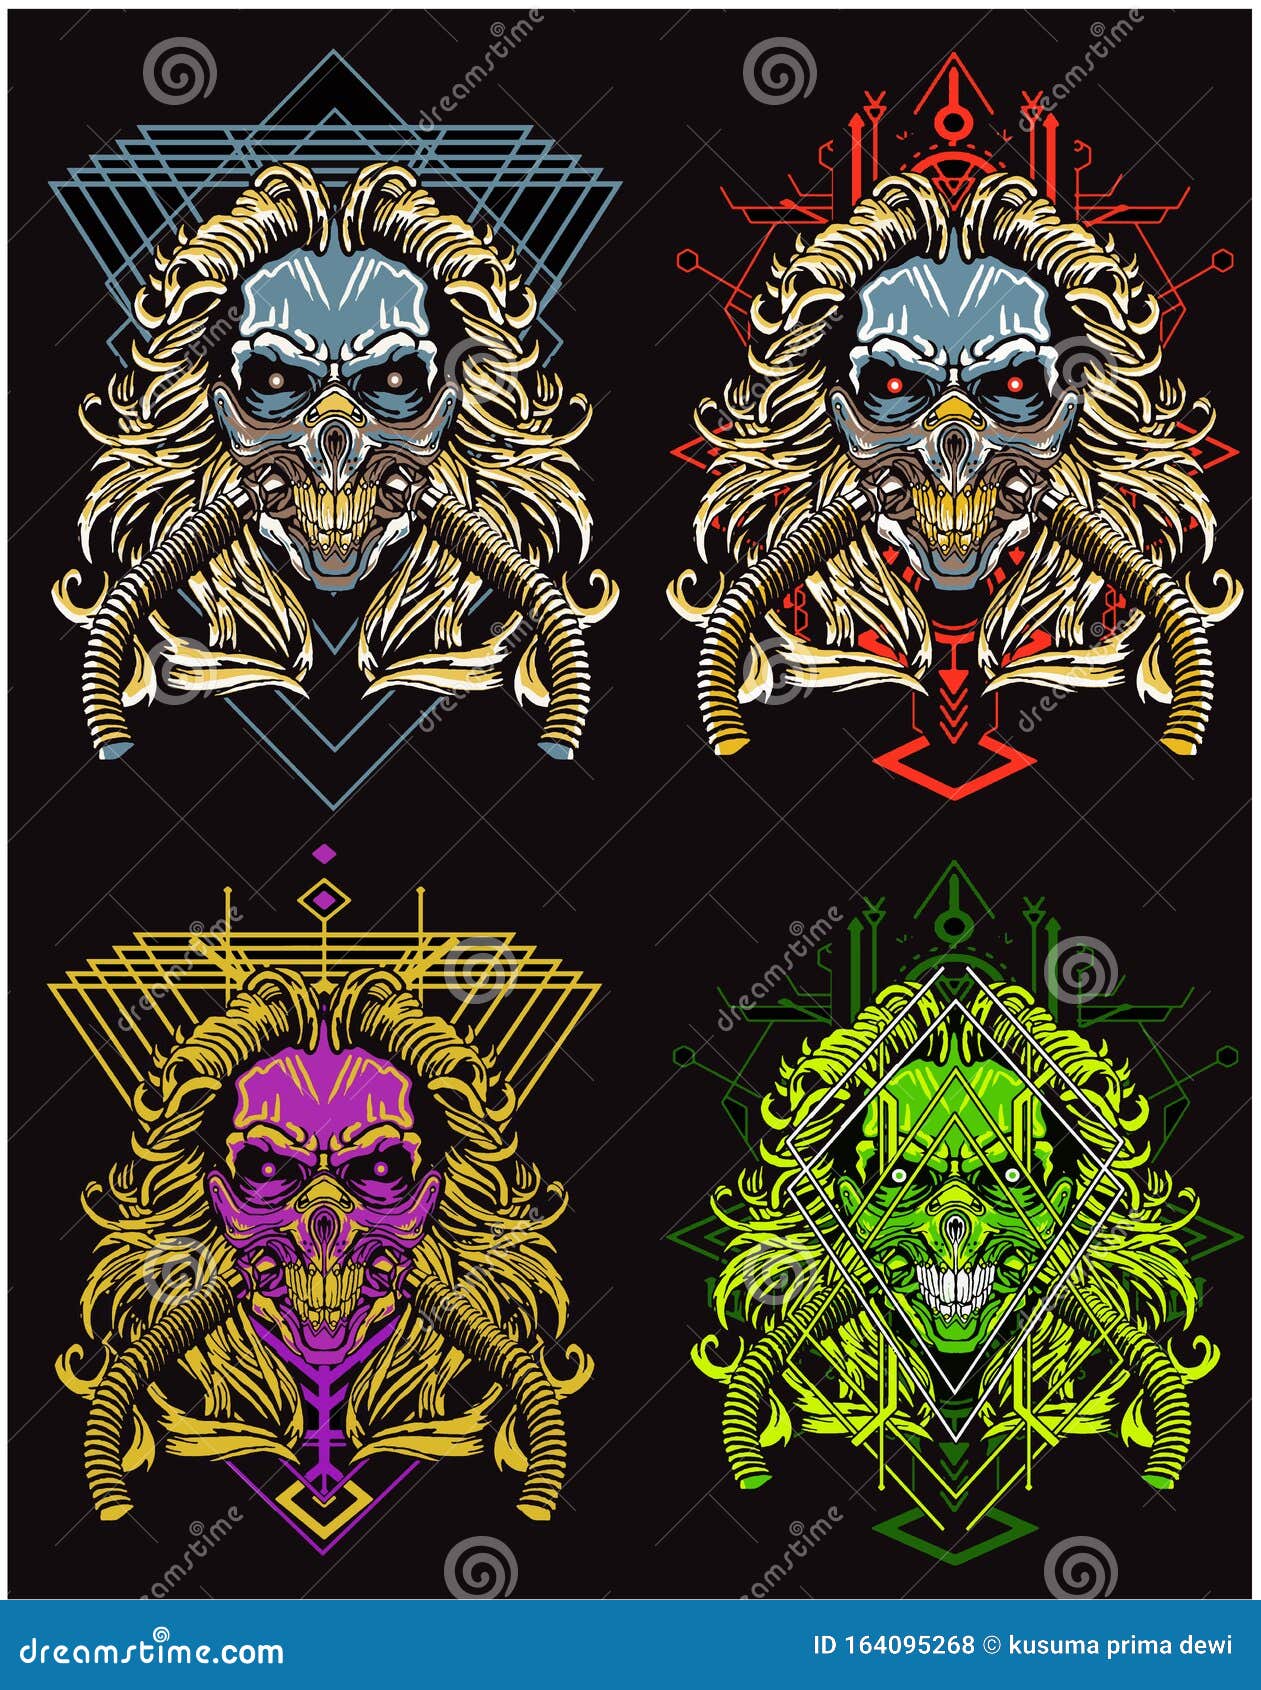 Download Skull Mask Mad Max T Shirt Design Bundle Set Stock Illustration Illustration Of Culture Evil 164095268